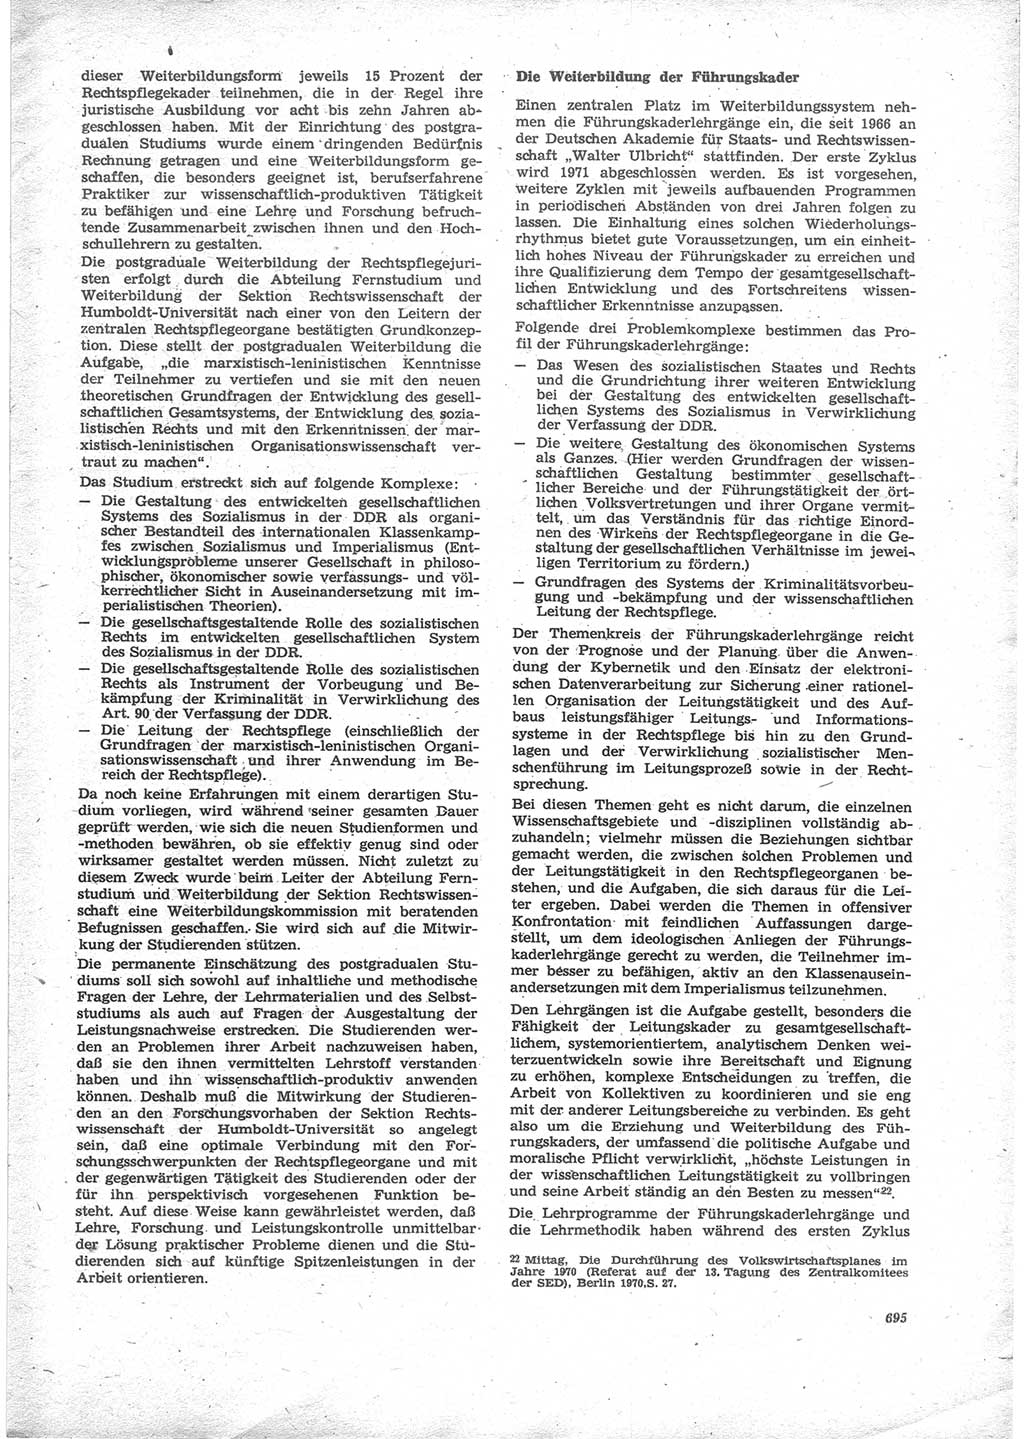 Neue Justiz (NJ), Zeitschrift für Recht und Rechtswissenschaft [Deutsche Demokratische Republik (DDR)], 24. Jahrgang 1970, Seite 695 (NJ DDR 1970, S. 695)